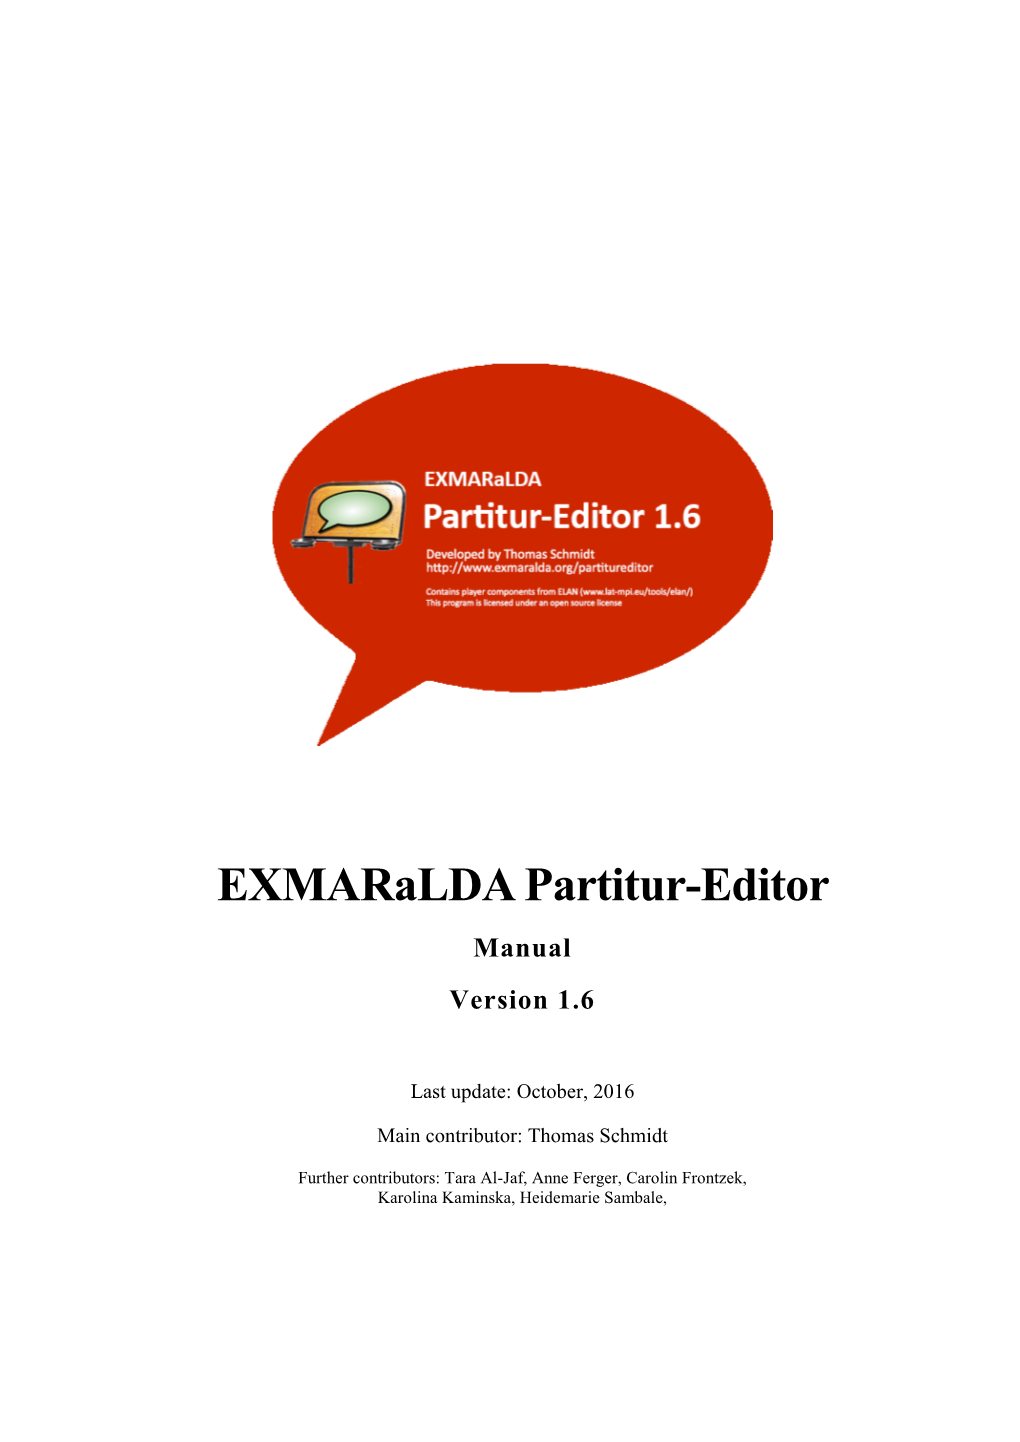 Exmaralda Partitur-Editor Manual Version 1.6